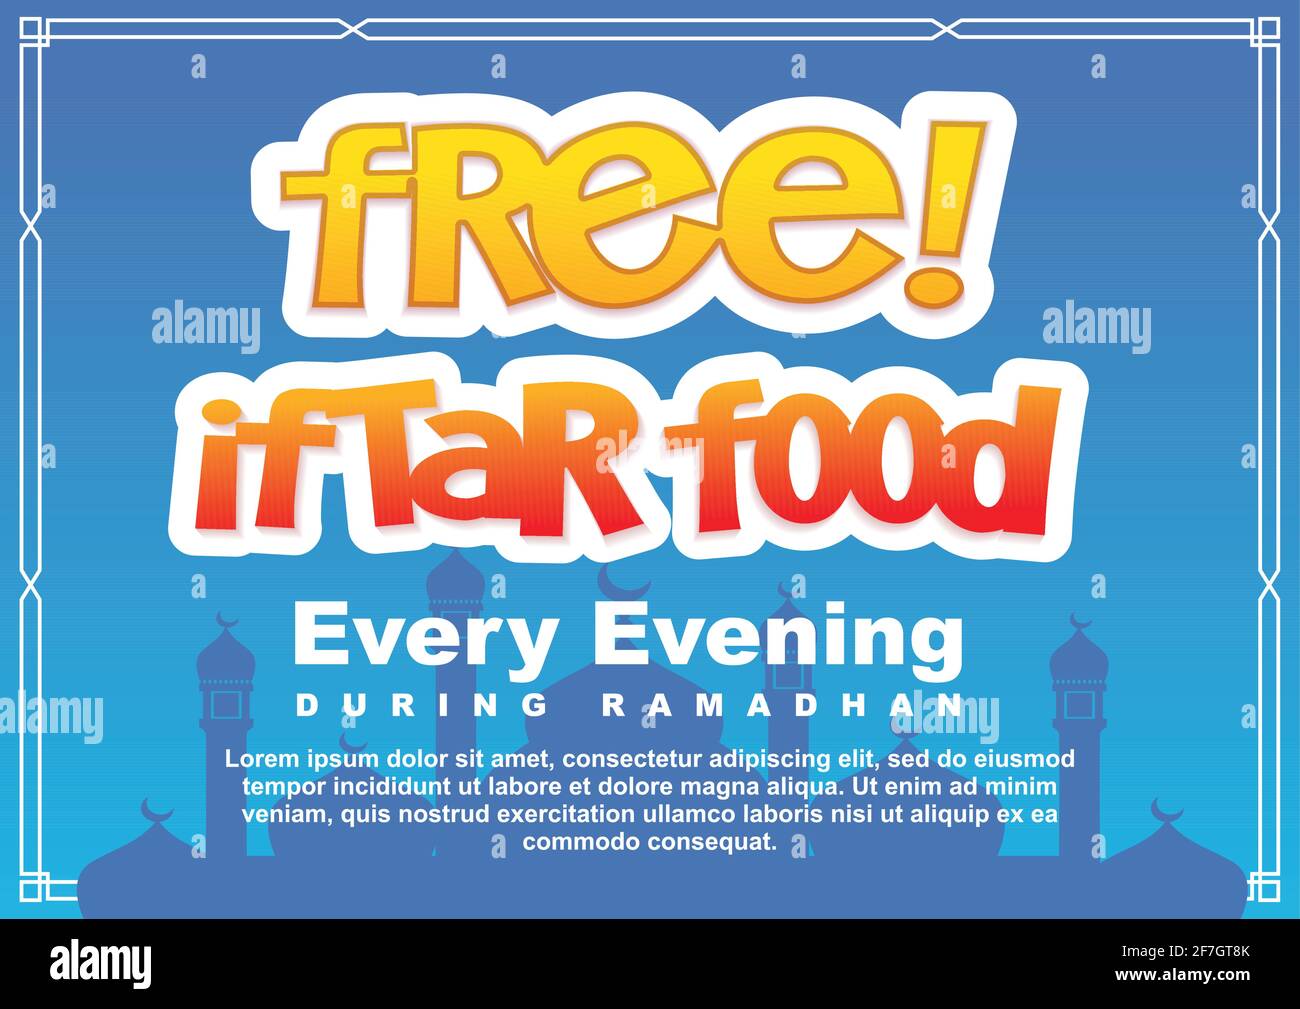 Kostenlose iftar Essen jeden Abend während ramadan Zeichen. Lebensmittel Spende Poster Vorlage Vektor Illustration Stock Vektor